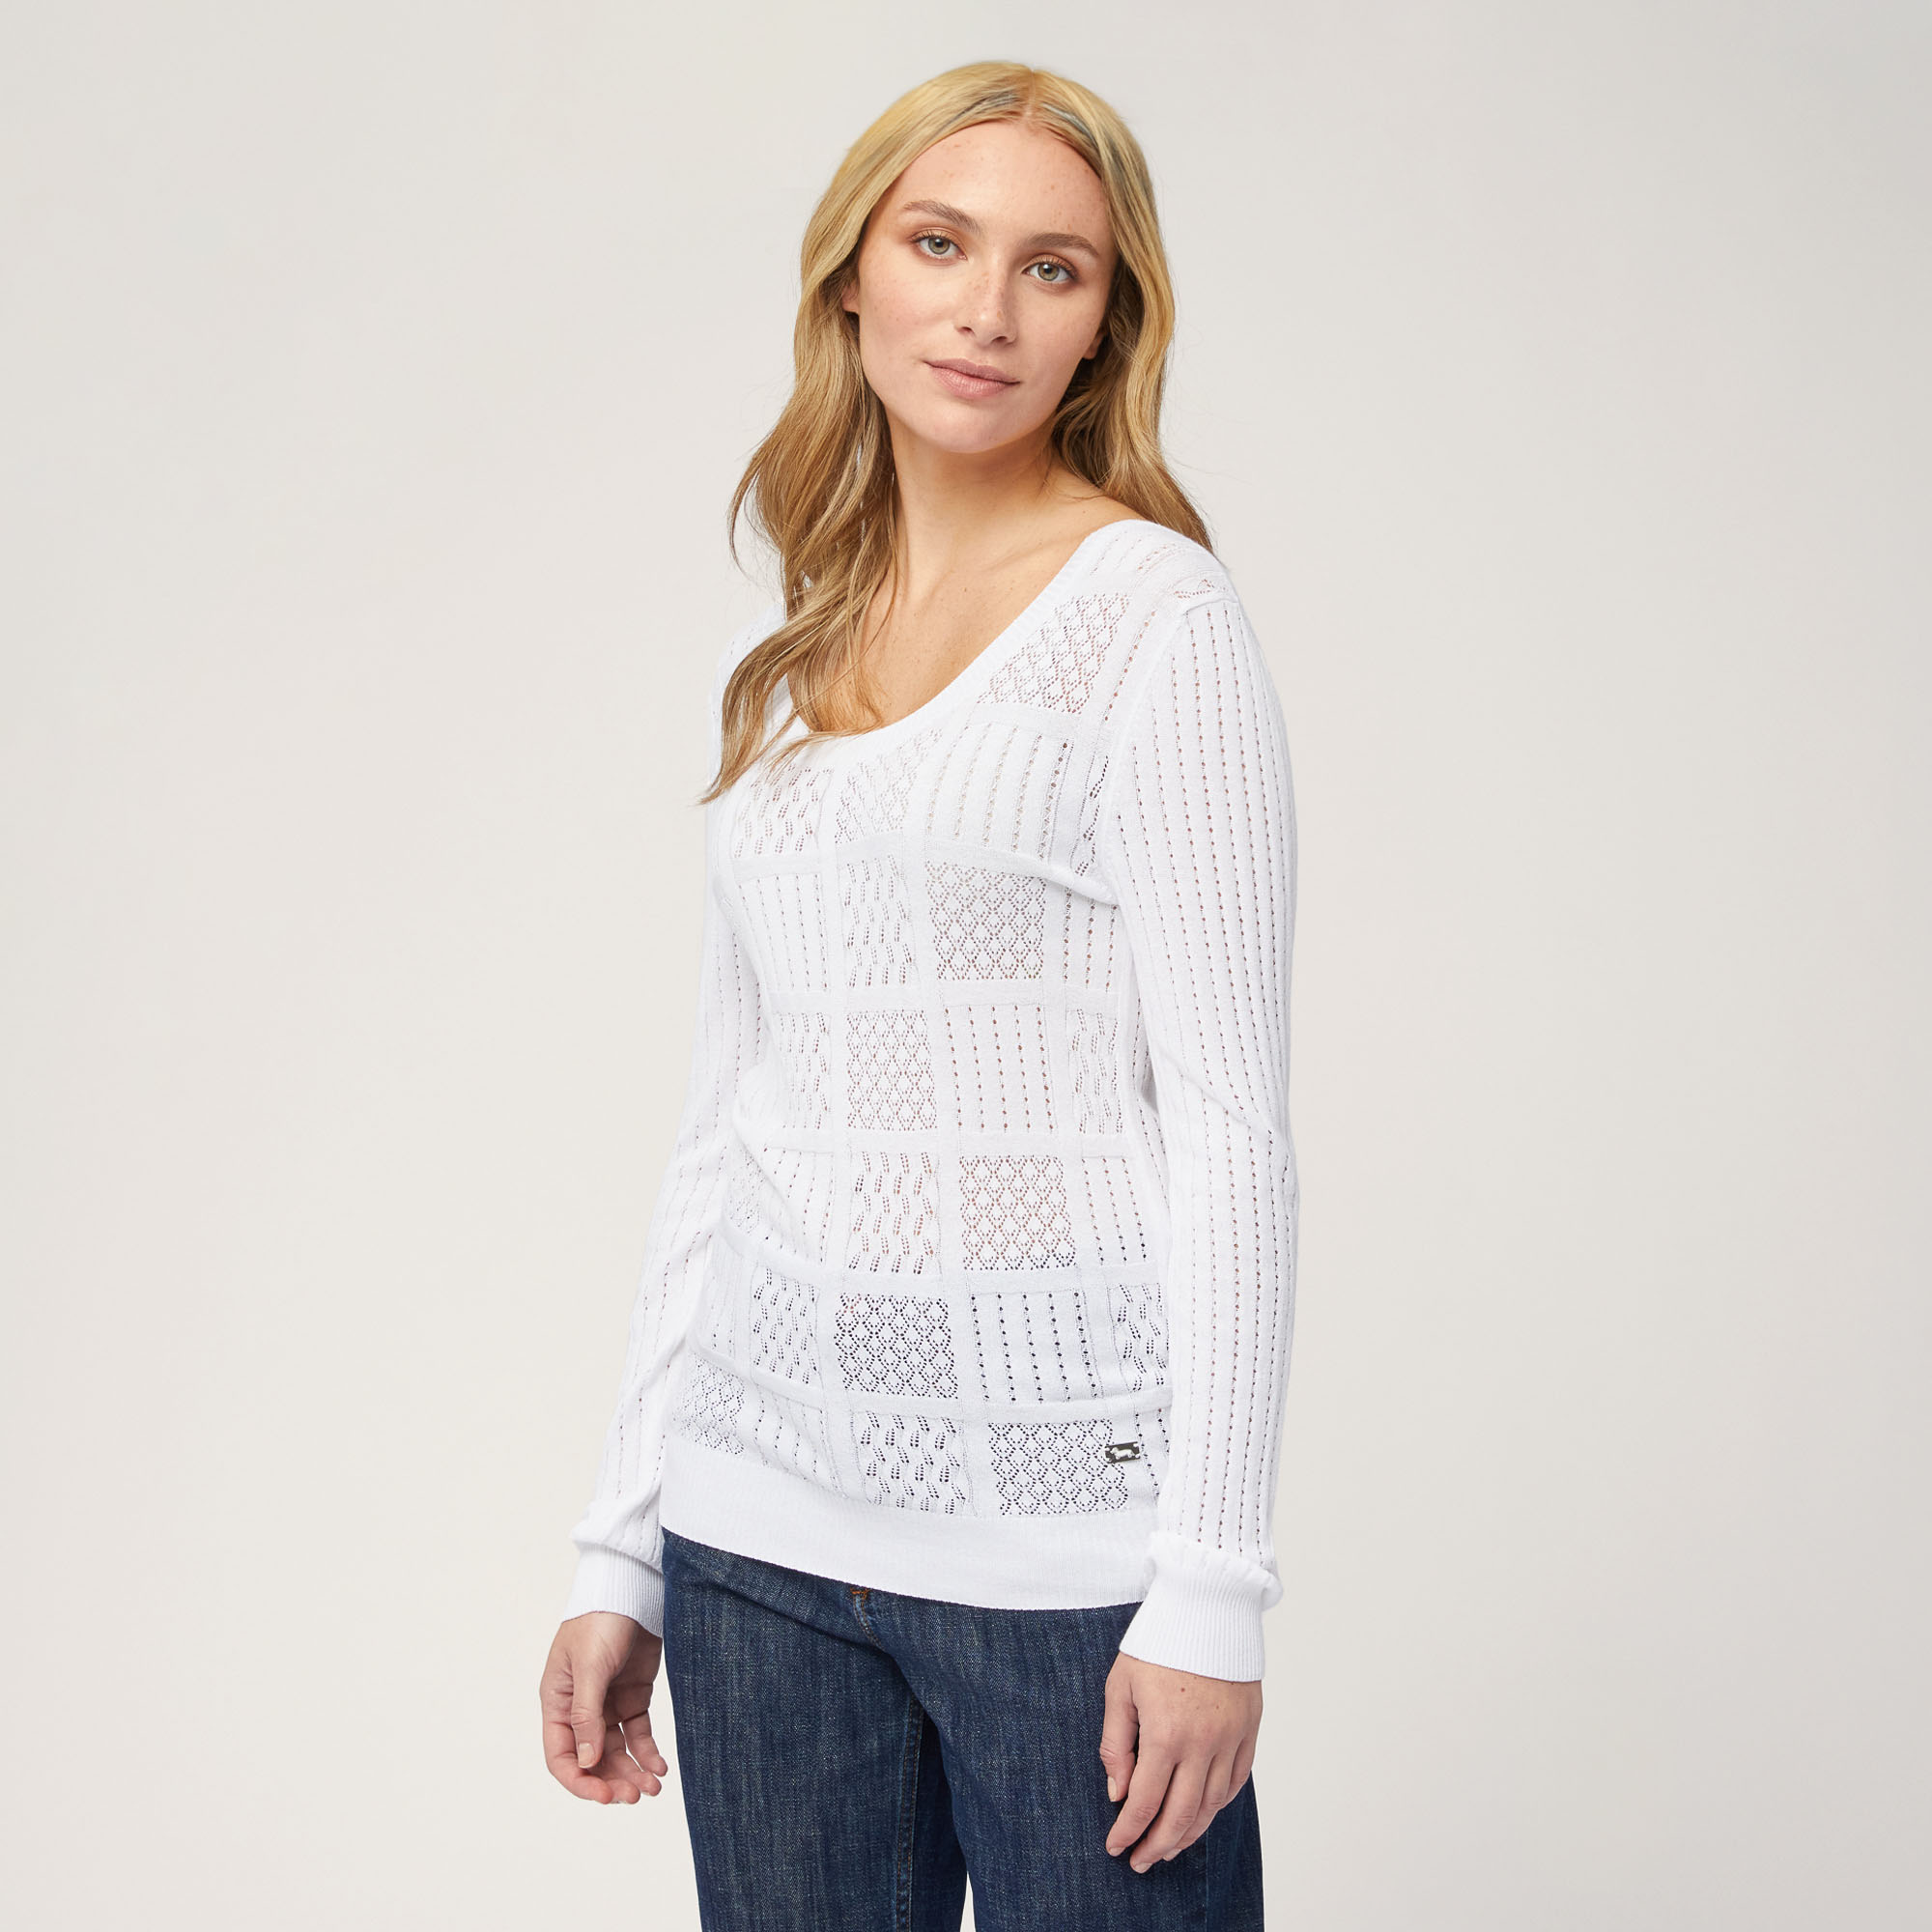 Mixed Stitch Sweater, White, large